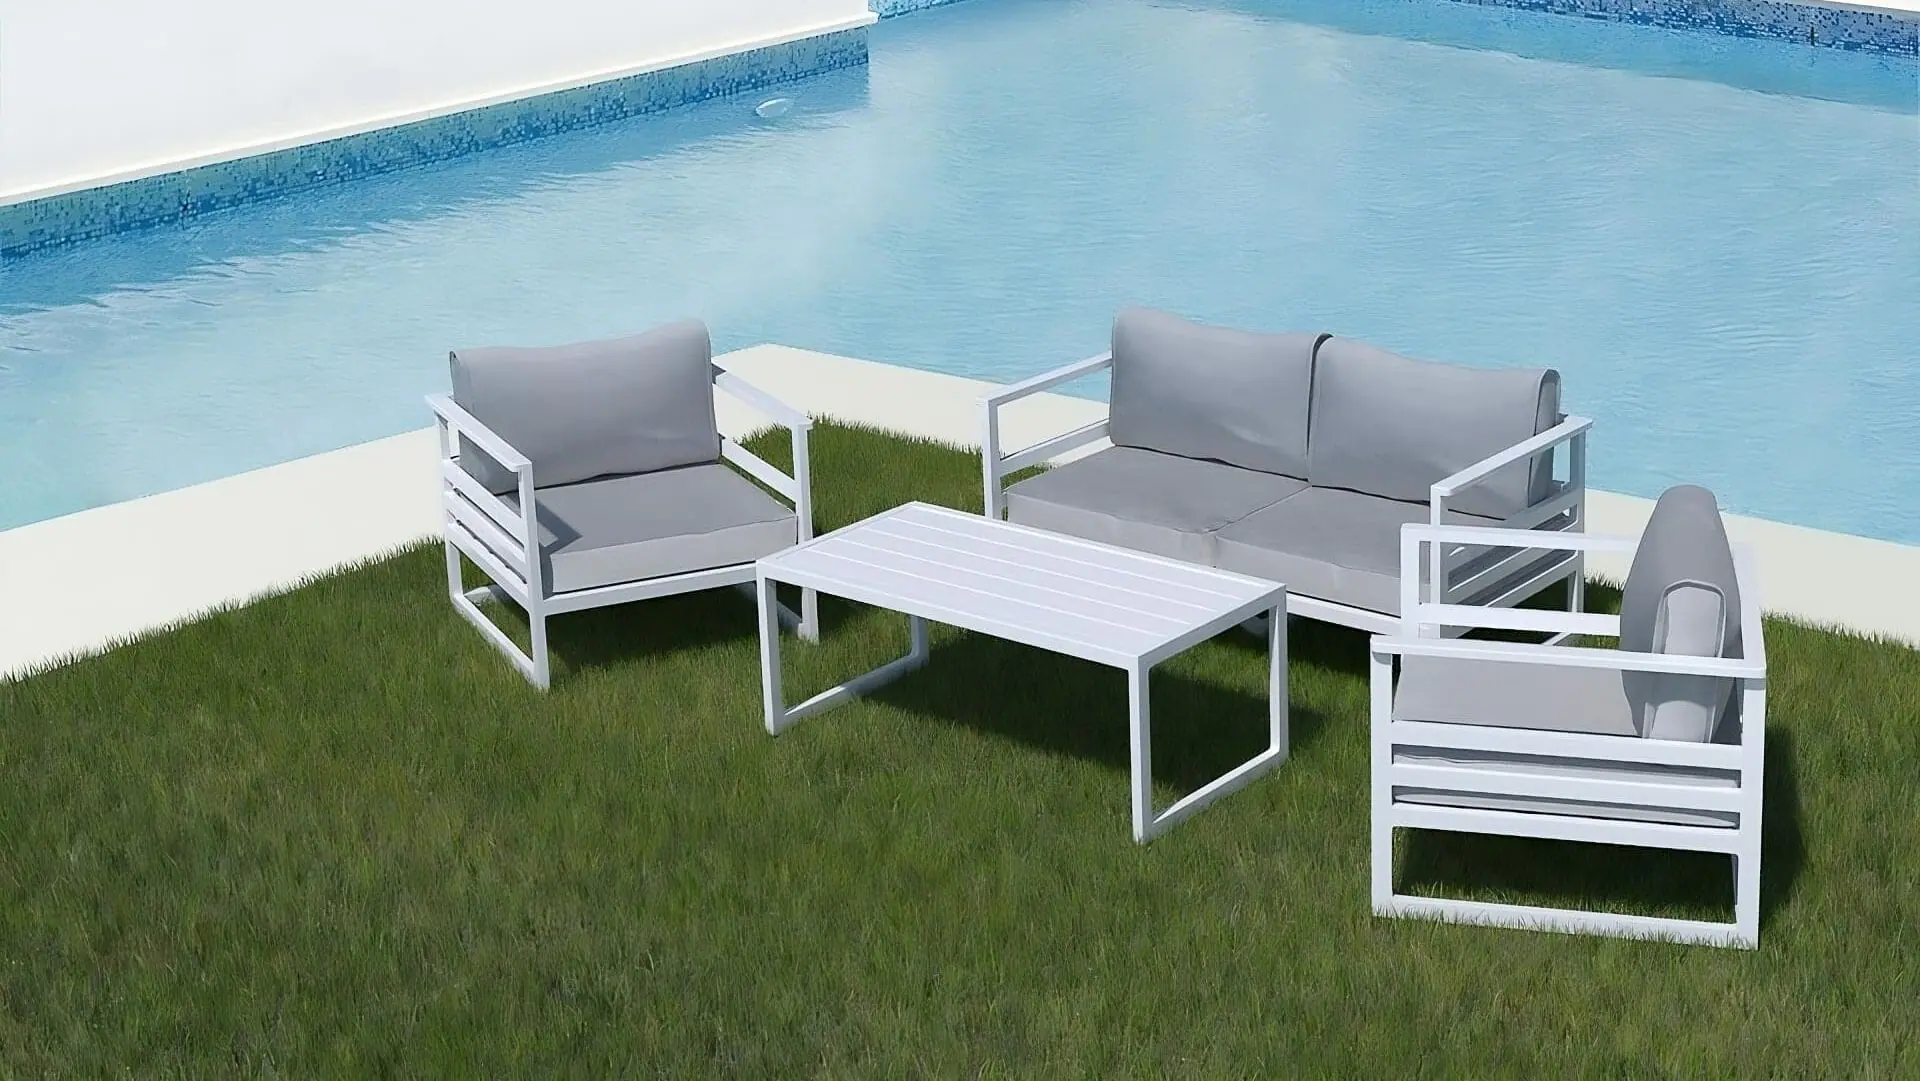 conva-chillout-aluminio-outdoor-sofa-lounge-aluminium-collection-4-2